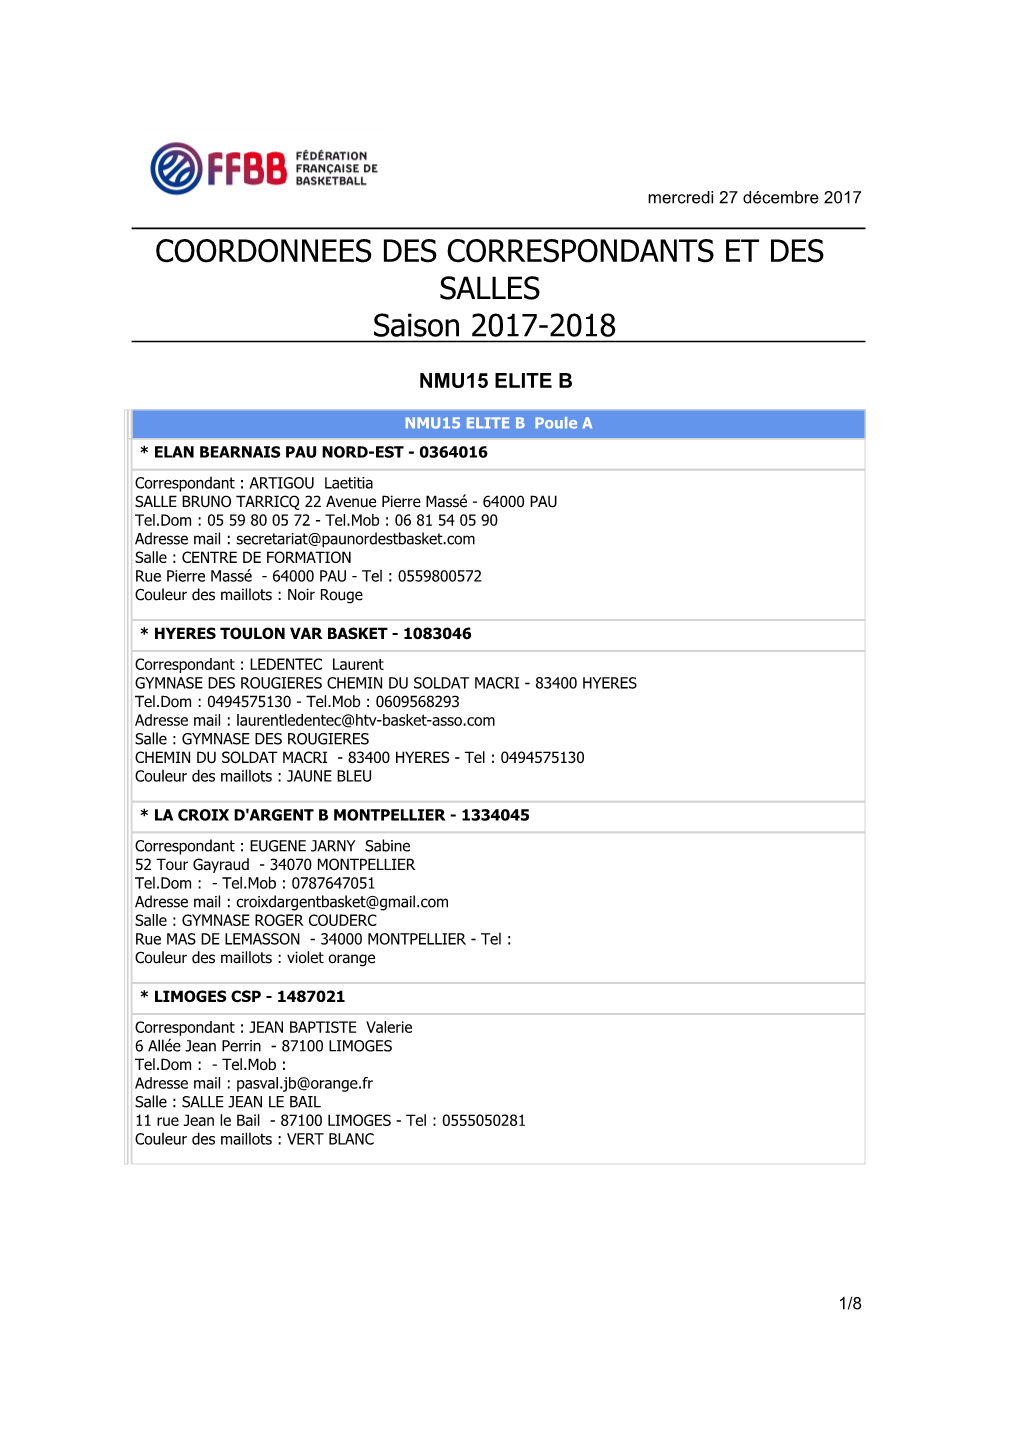 COORDONNEES DES CORRESPONDANTS ET DES SALLES Saison 2017-2018